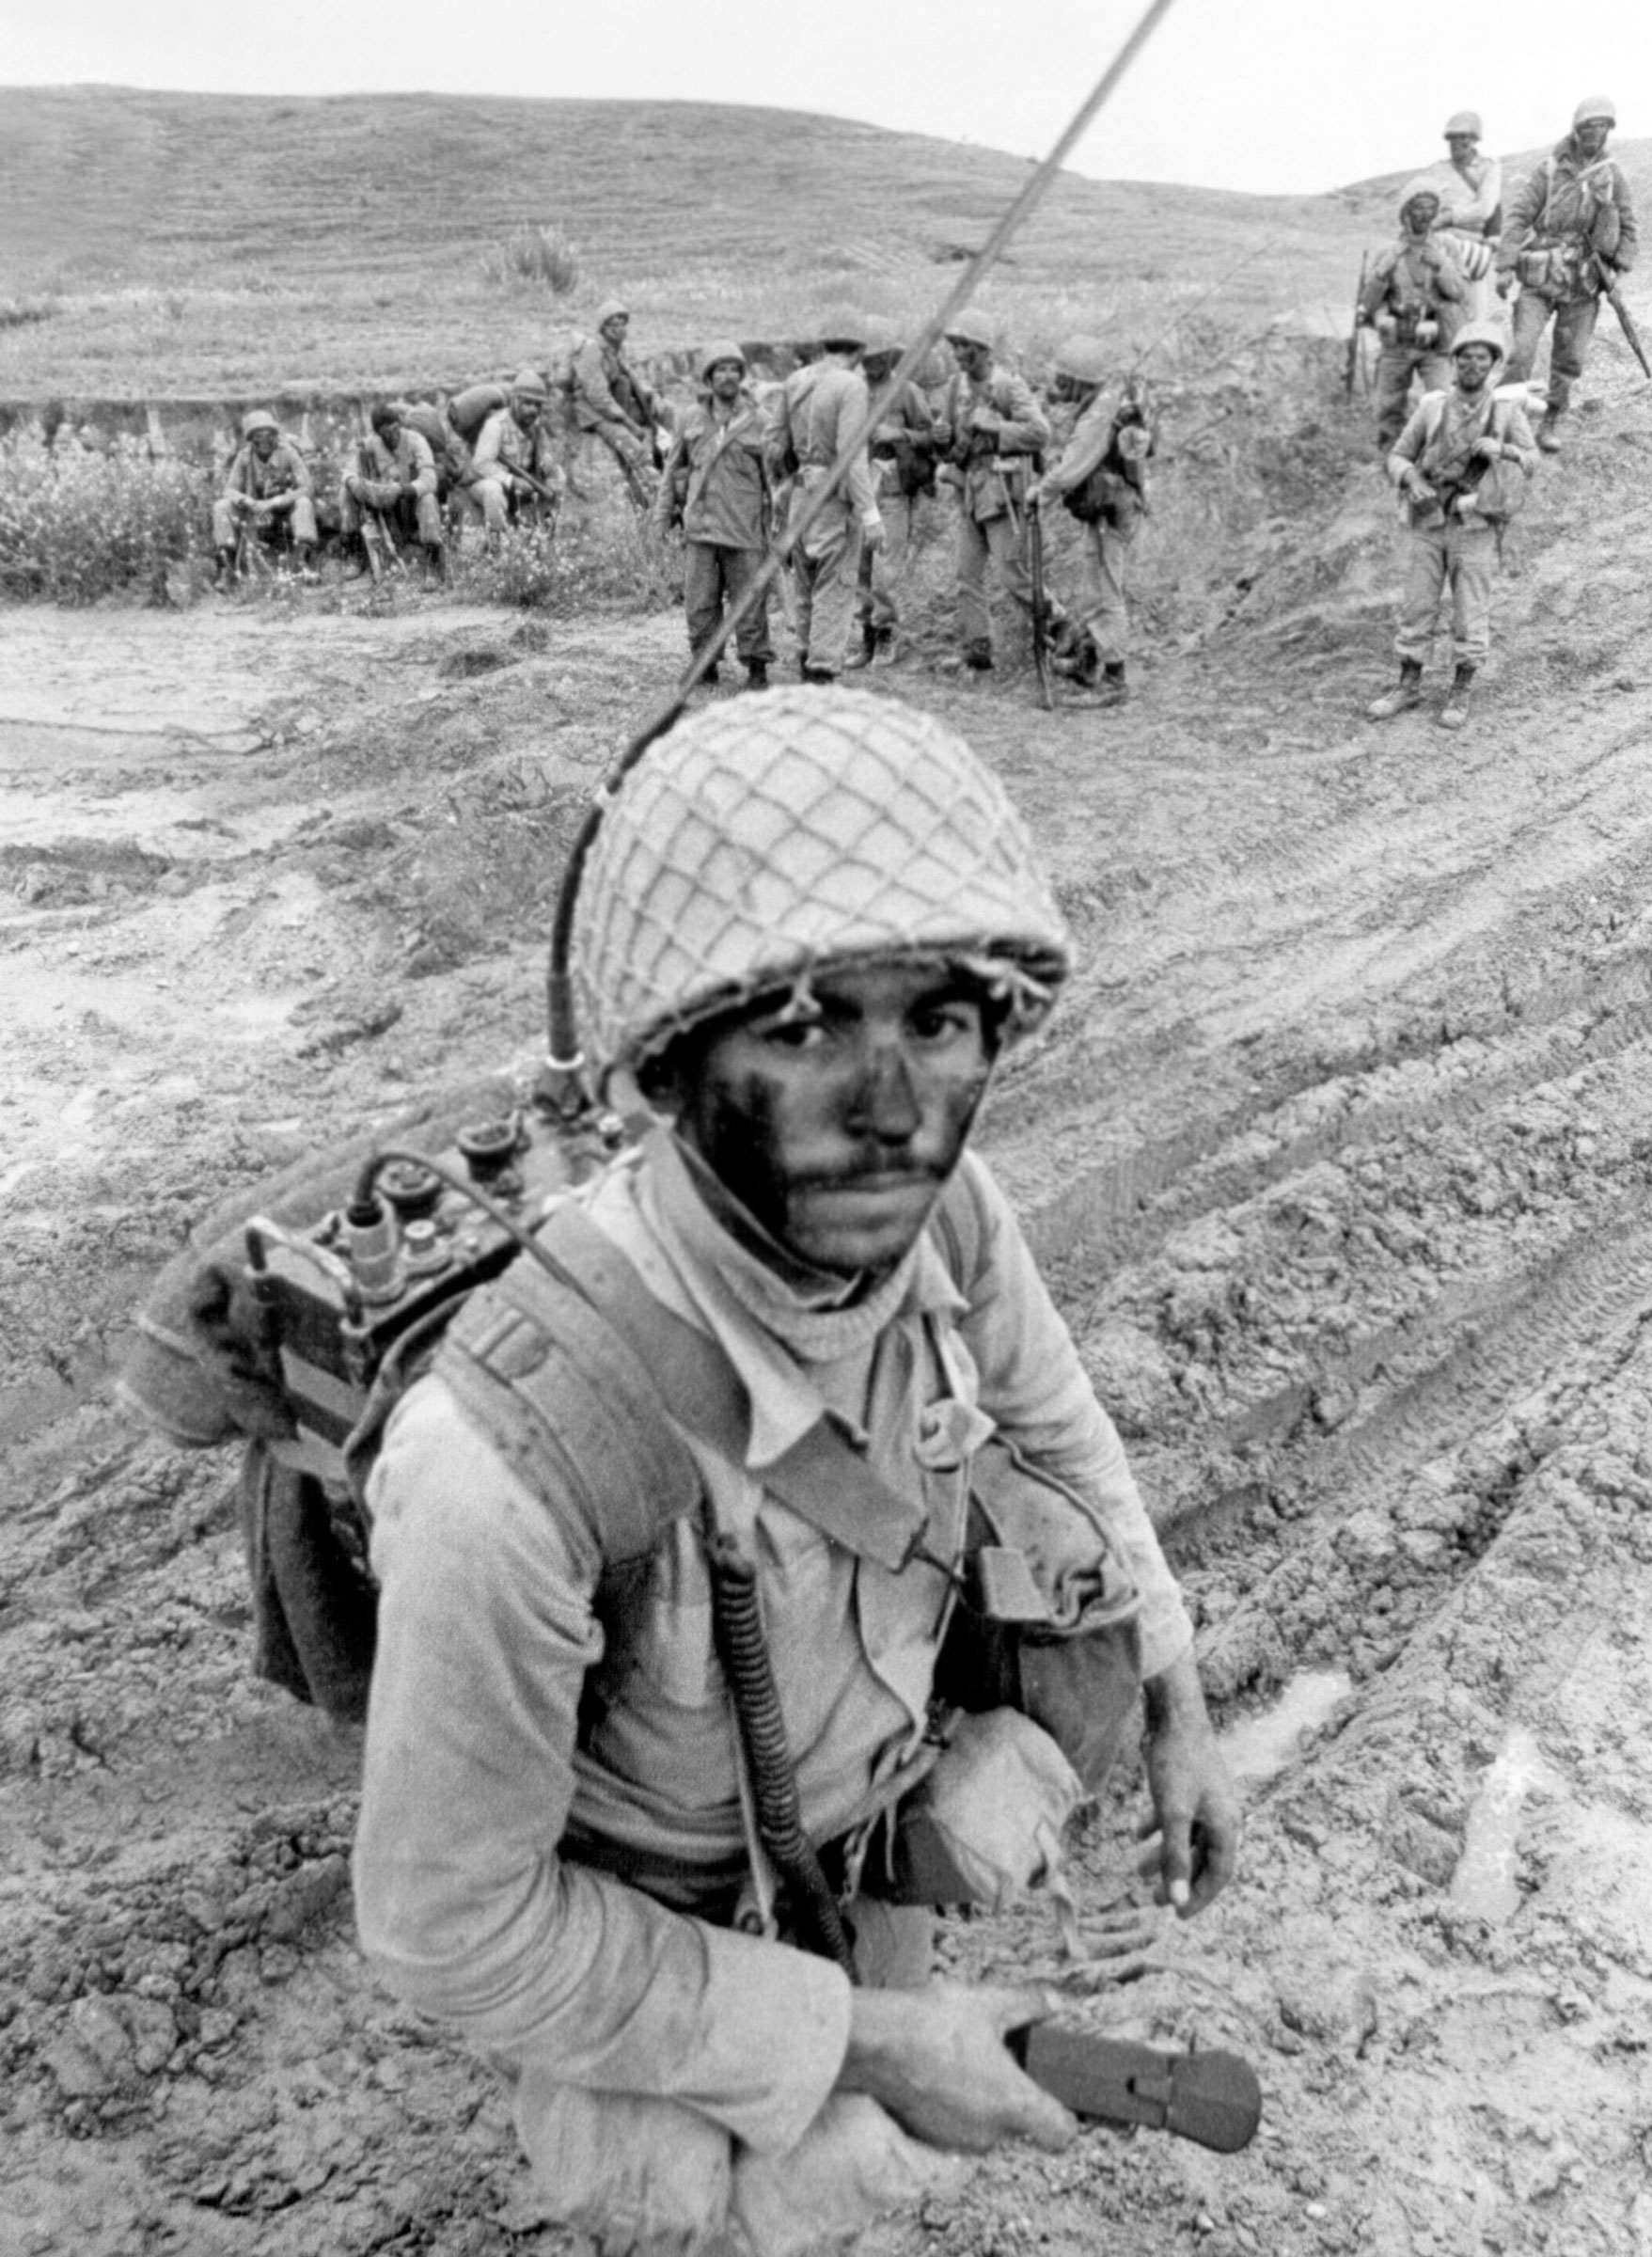 Иран годы войны. Ирано иракский конфликт 1980-1988. Солдаты ирано-иракской войны.